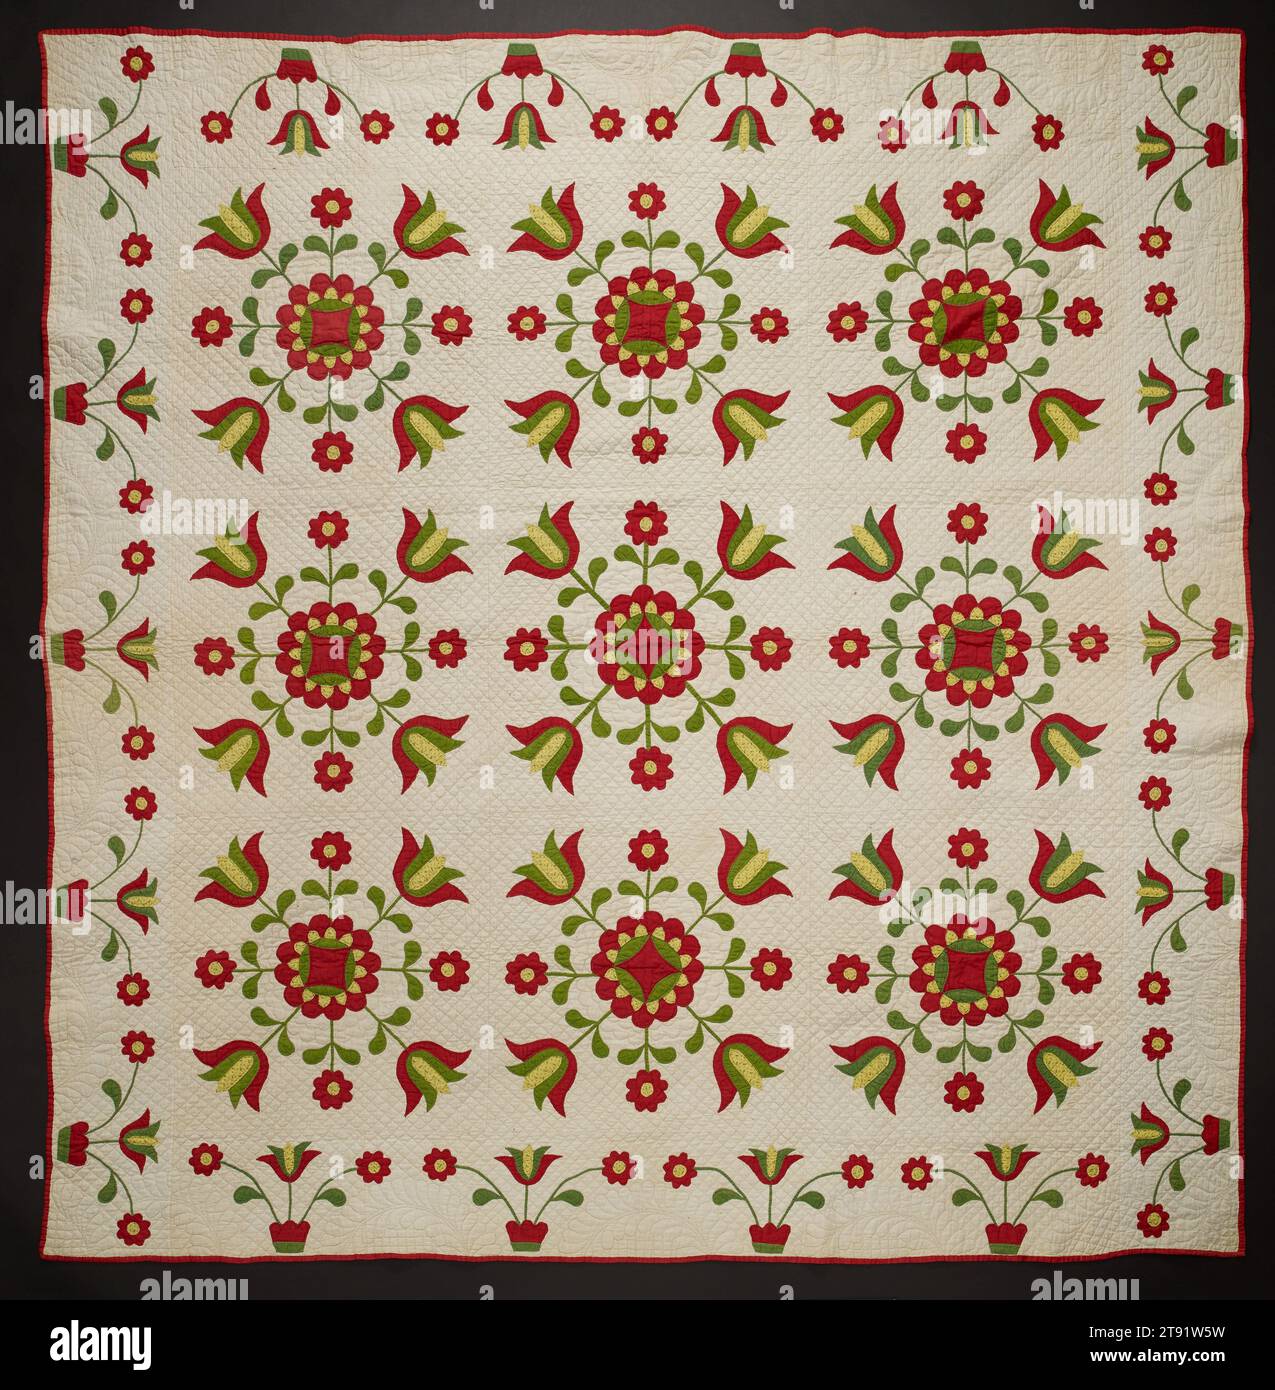 Set of 3 Vintage Large Quilt Blocks Squares Size 12 x 12in Floral